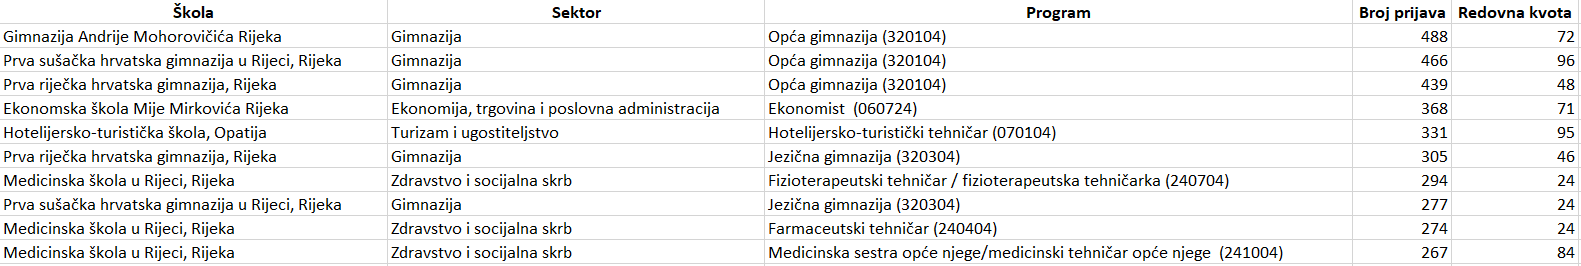 Programi s najviše prijava u Primorsko-goranskoj županiji 4. srpnja